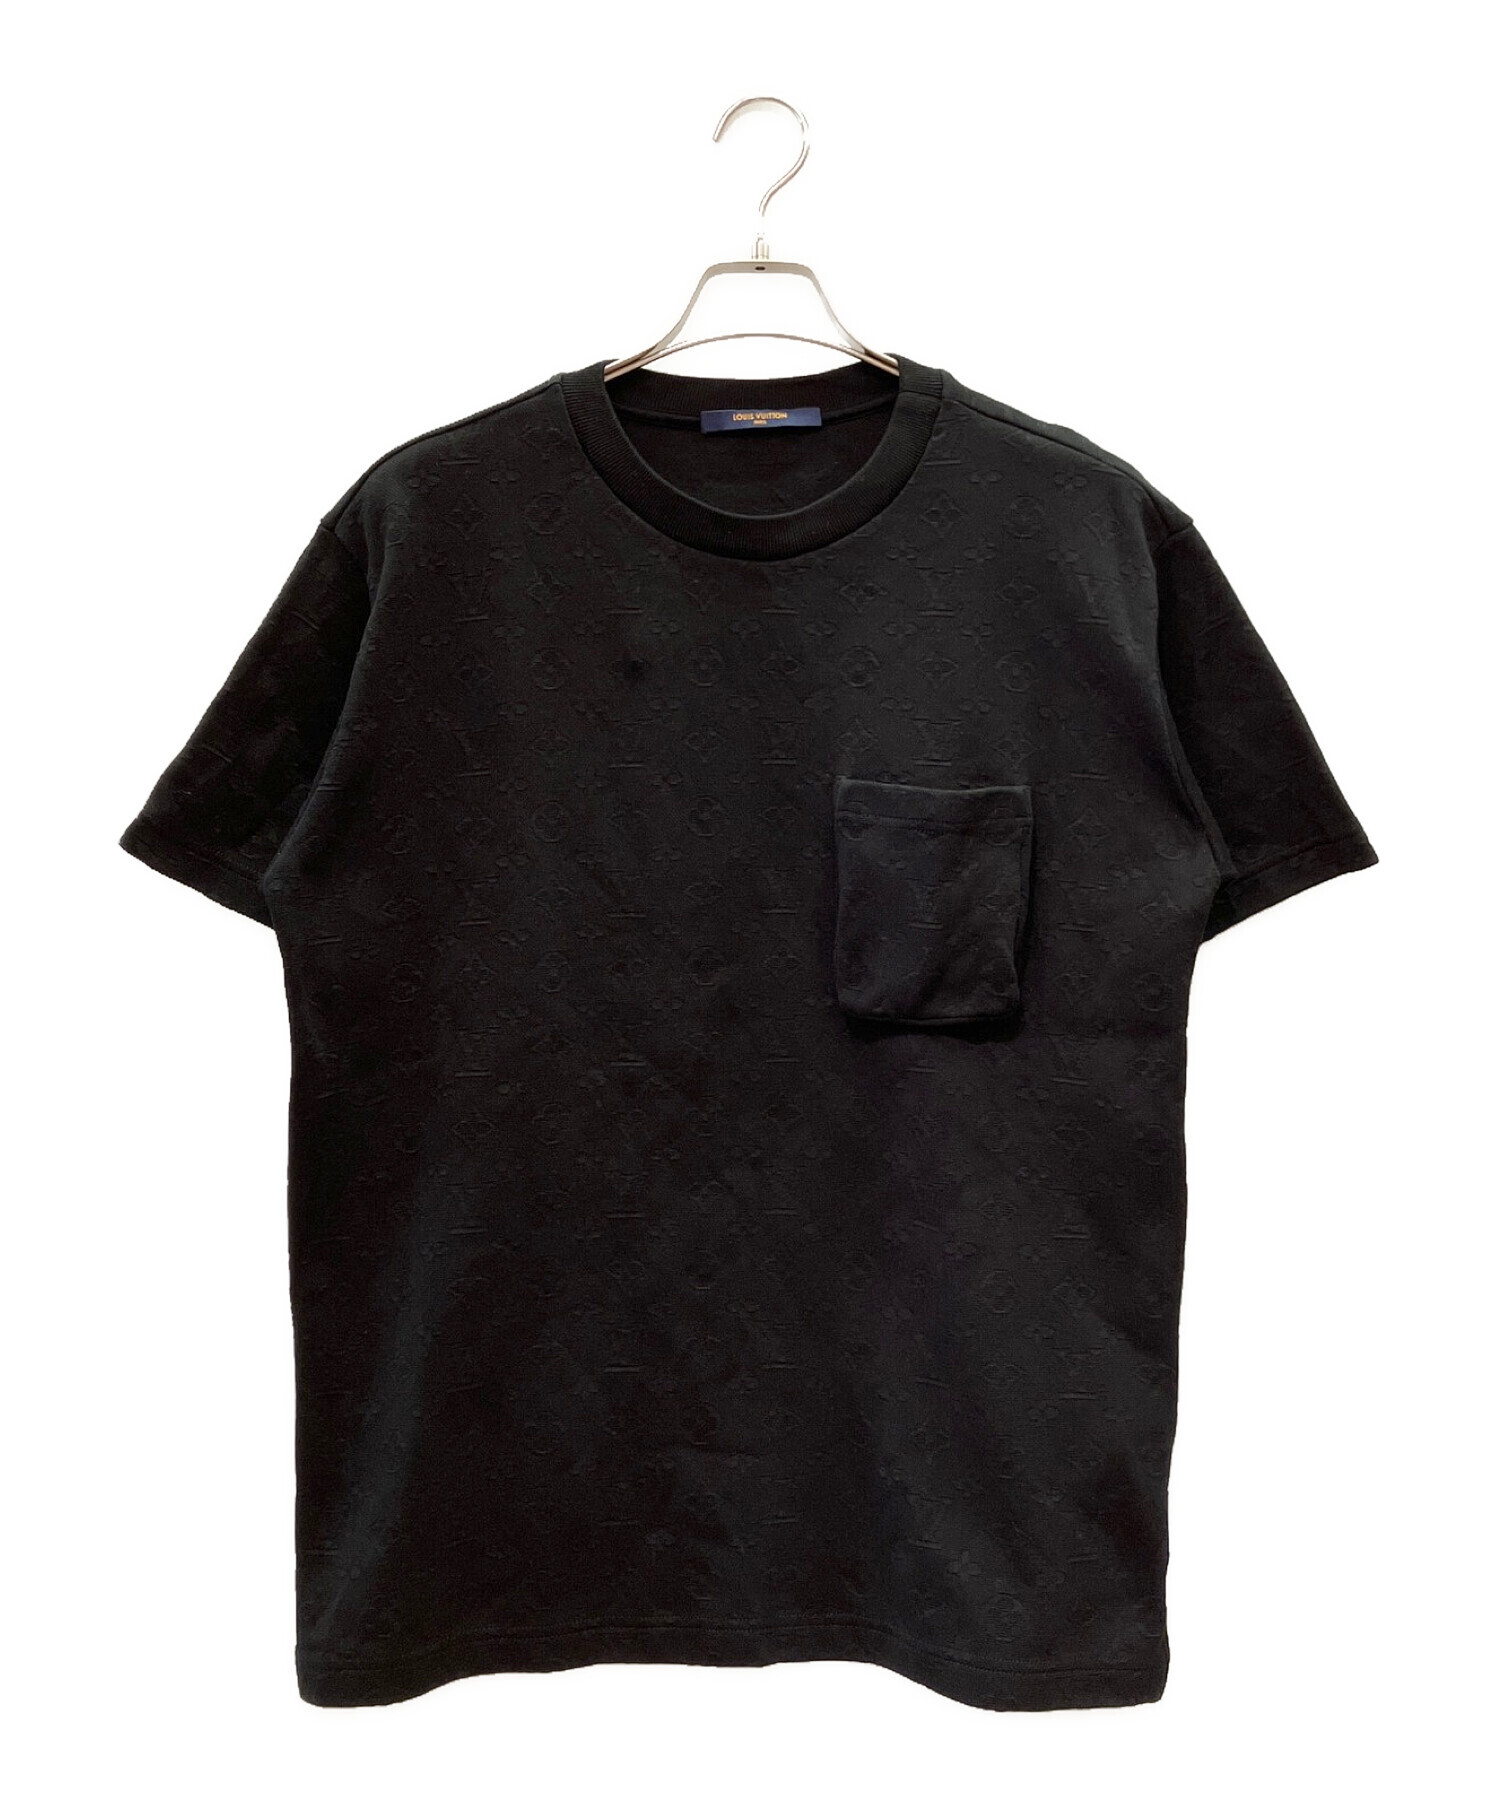 LOUIS VUITTON (ルイ ヴィトン) 3DポケットモノグラムTシャツ ブラック サイズ:M